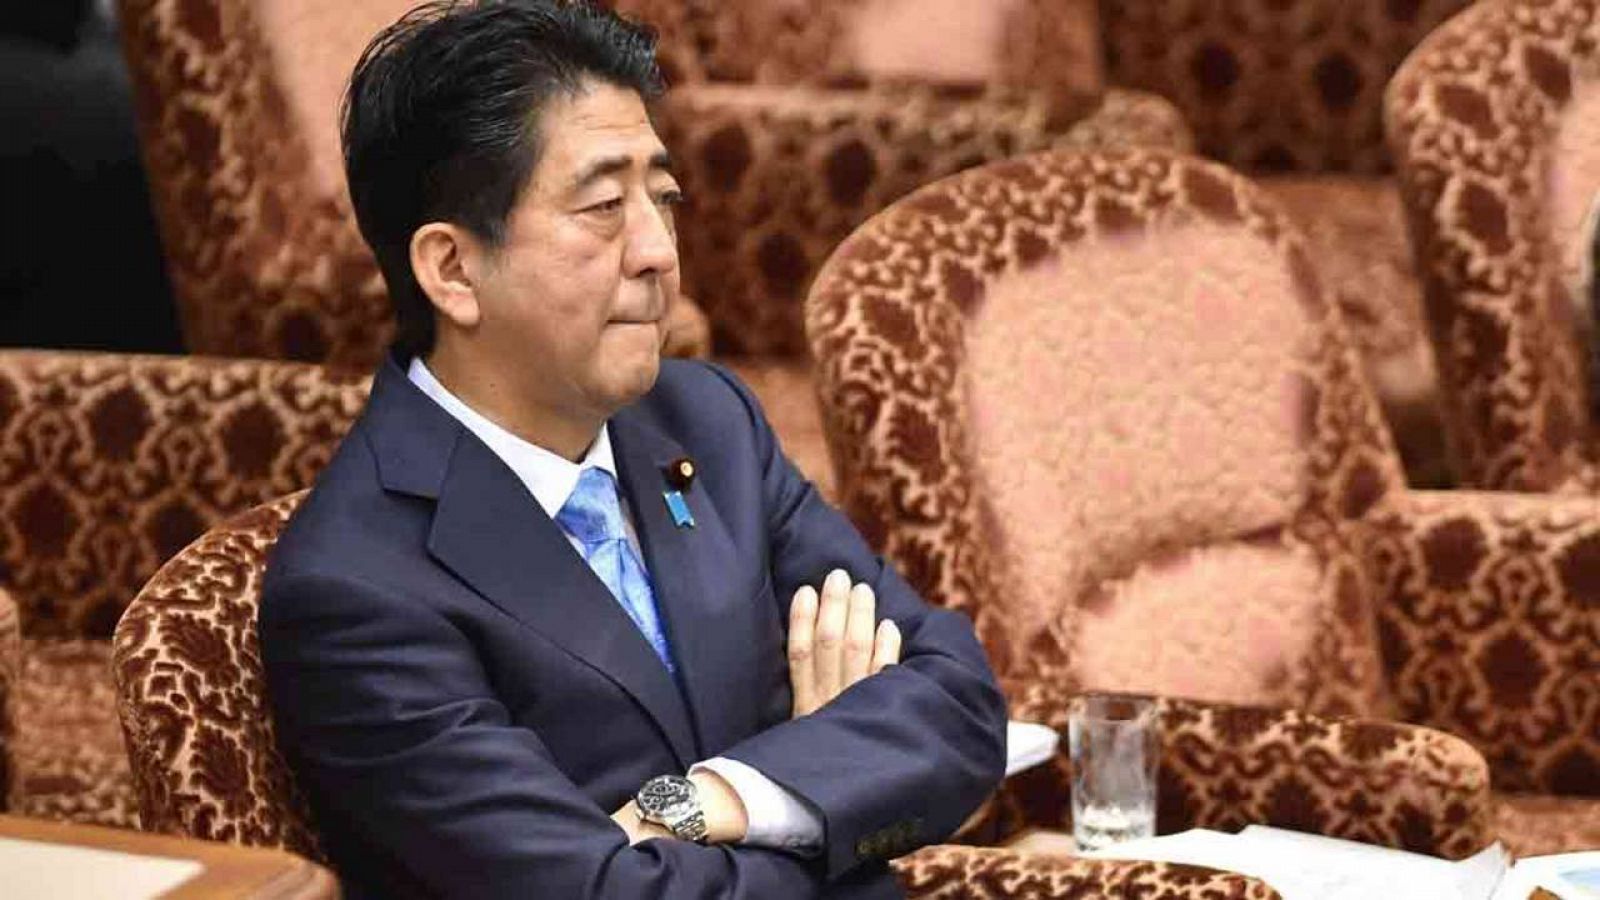 Estados Unidos lleva espiando a la cúpula del Gobieno japonés desde el gobierno de Shinzo Abe en 2006